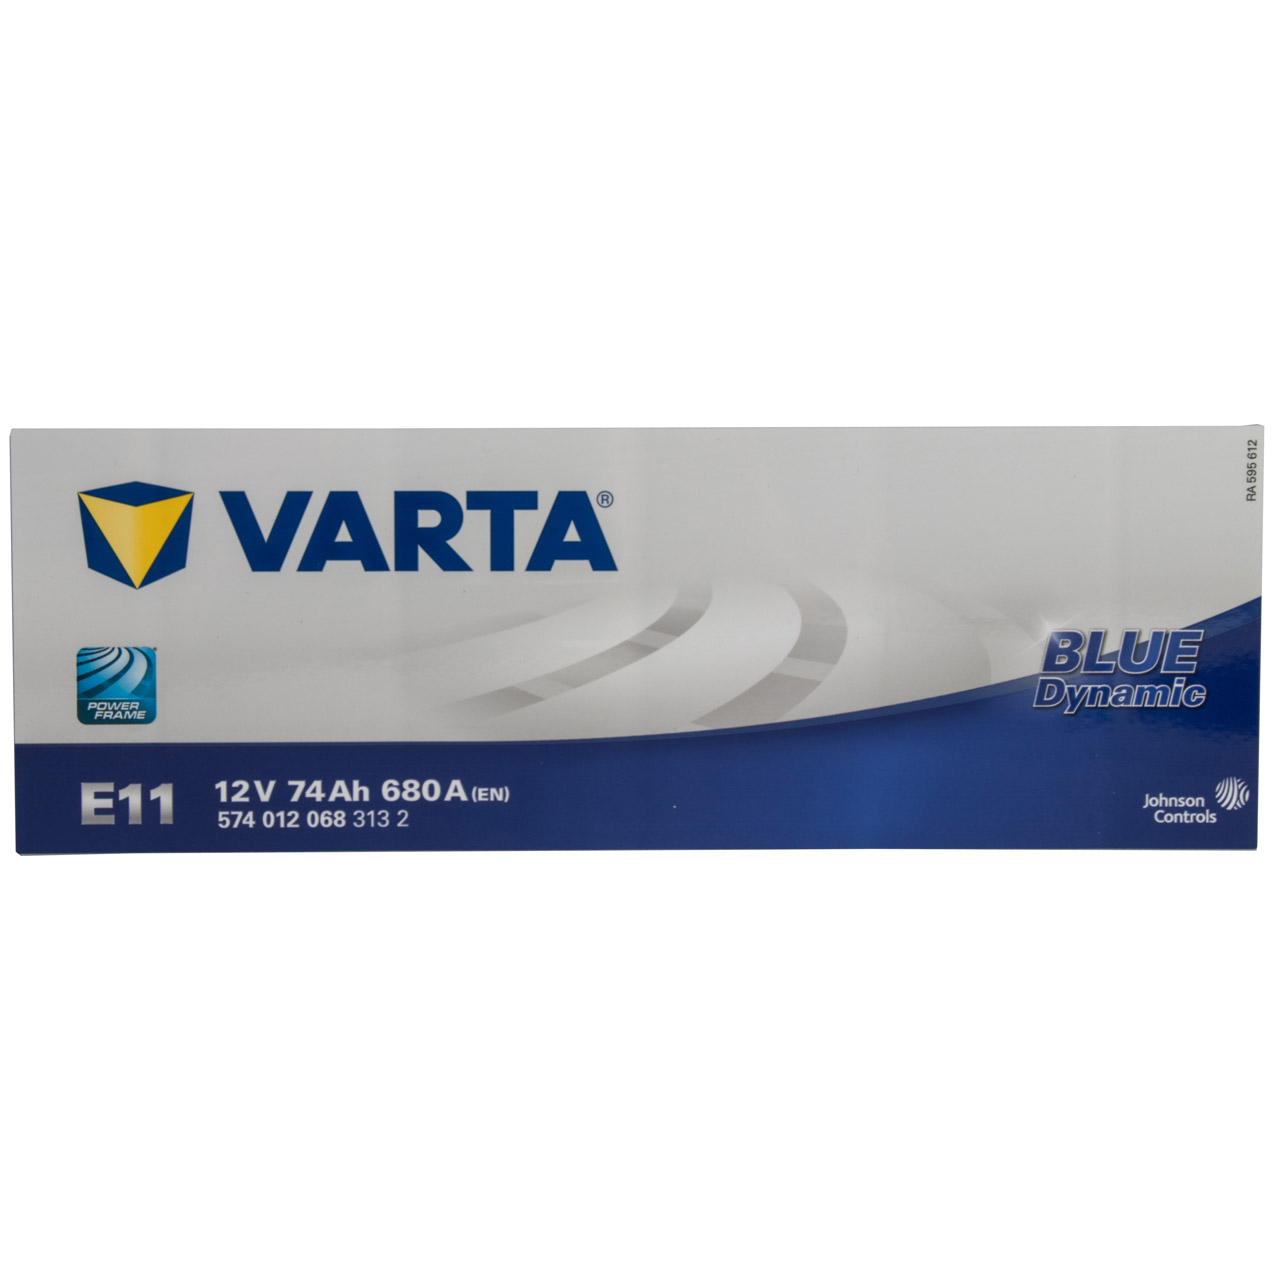 VARTA Starterbatterien / Autobatterien - 5740120683132 